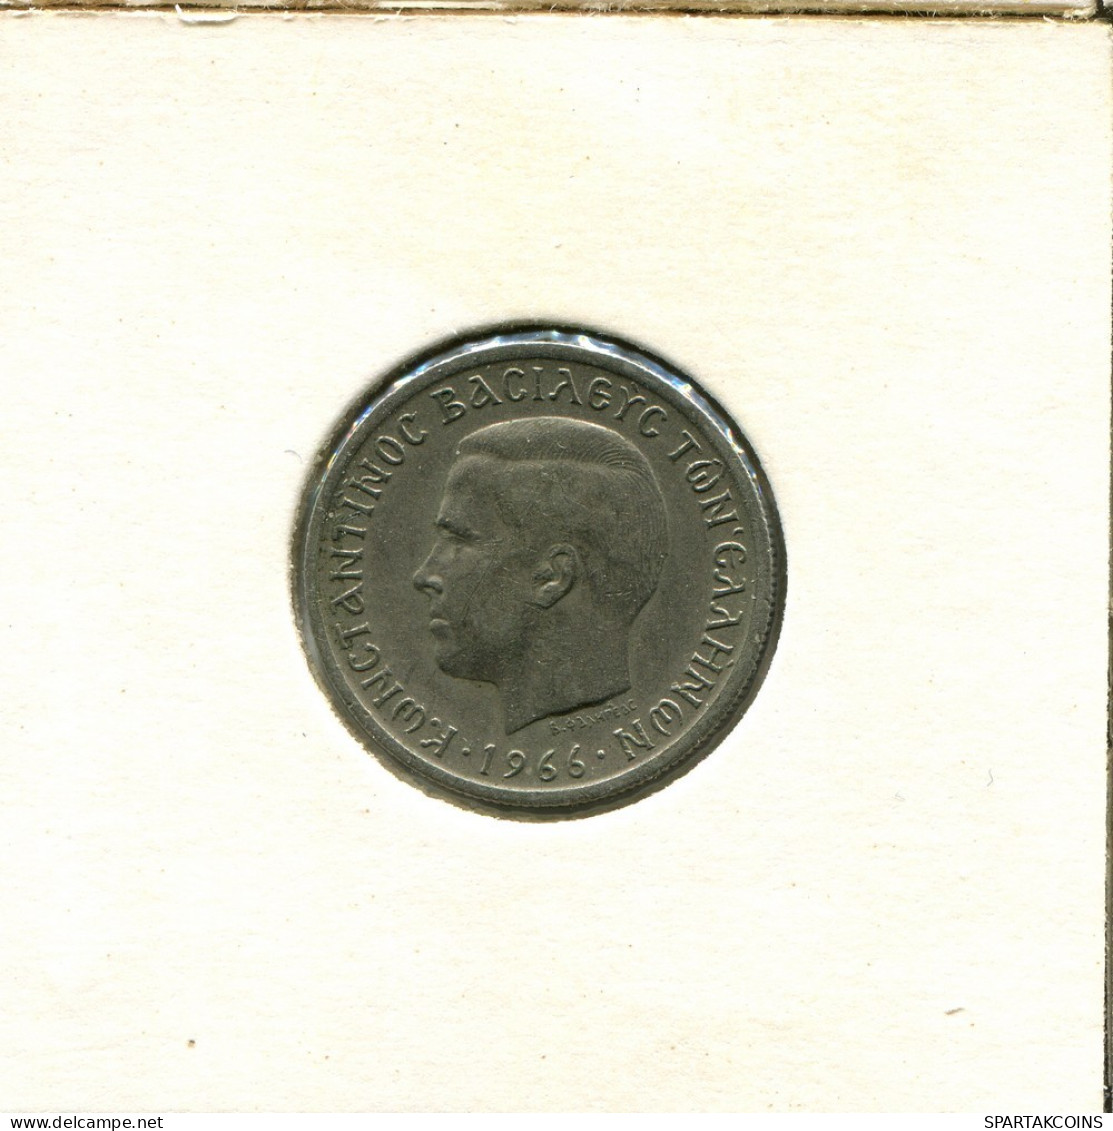 1 DRACHMA 1966 GRECIA GREECE Moneda #AS765.E.A - Grèce